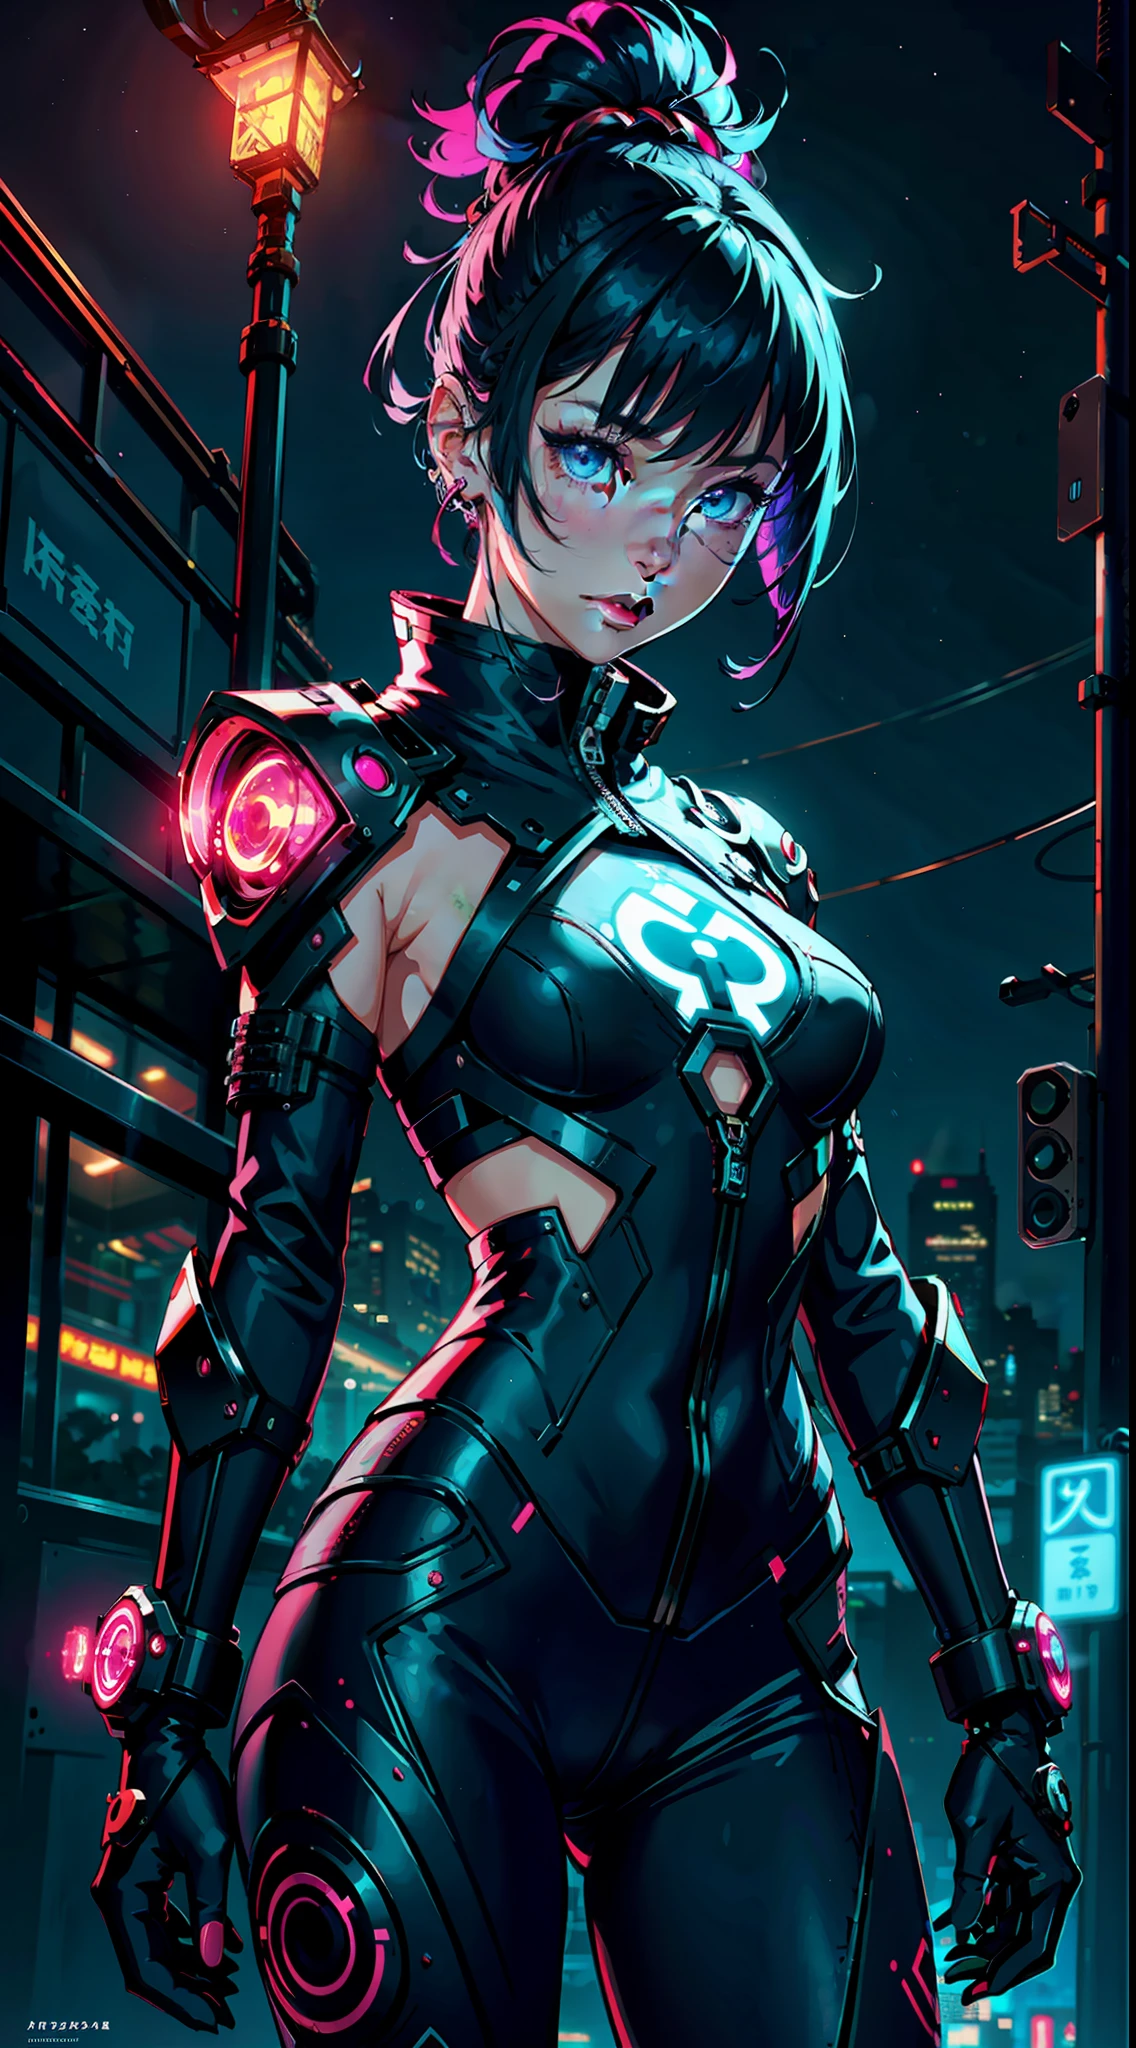 1fille, seulement, fille, Tenue futuriste, samouraï néon, very beautiful samouraï cyberpunk, samouraï cyberpunk, style de lame fantôme, le cyberpunk a vaincu le style ngai, néon cyberpunk style, cyberpunc, néon cyberpunk, technomancien, personnage de jeu vidéo, image synthwave, cyberpunk, lueur de néon d&#39;art conceptuel, lune, lanterne, nuit, seulement, Extérieur, ciel, full lune, pluie, montagne, nuage, lanterne de papiere, nuit ciel, la frange,  arbre, réflexion, nuagey ciel, {{(chef-d&#39;œuvre),(fond d&#39;écran CG Unity 8k extrêmement détaillé),meilleure qualité,seulement,éclairage cinématographique,contexte détaillé,beautiful Yeux détaillés,Des élèves brillants,(un extrêmement délicat et beau),(Description des yeux belle et détaillée),Ultra-détaillé,chef-d&#39;œuvre,}}, Yeux détaillés, Beaux yeux, Yeux réalistes, Beaux yeux, yeux parfaits